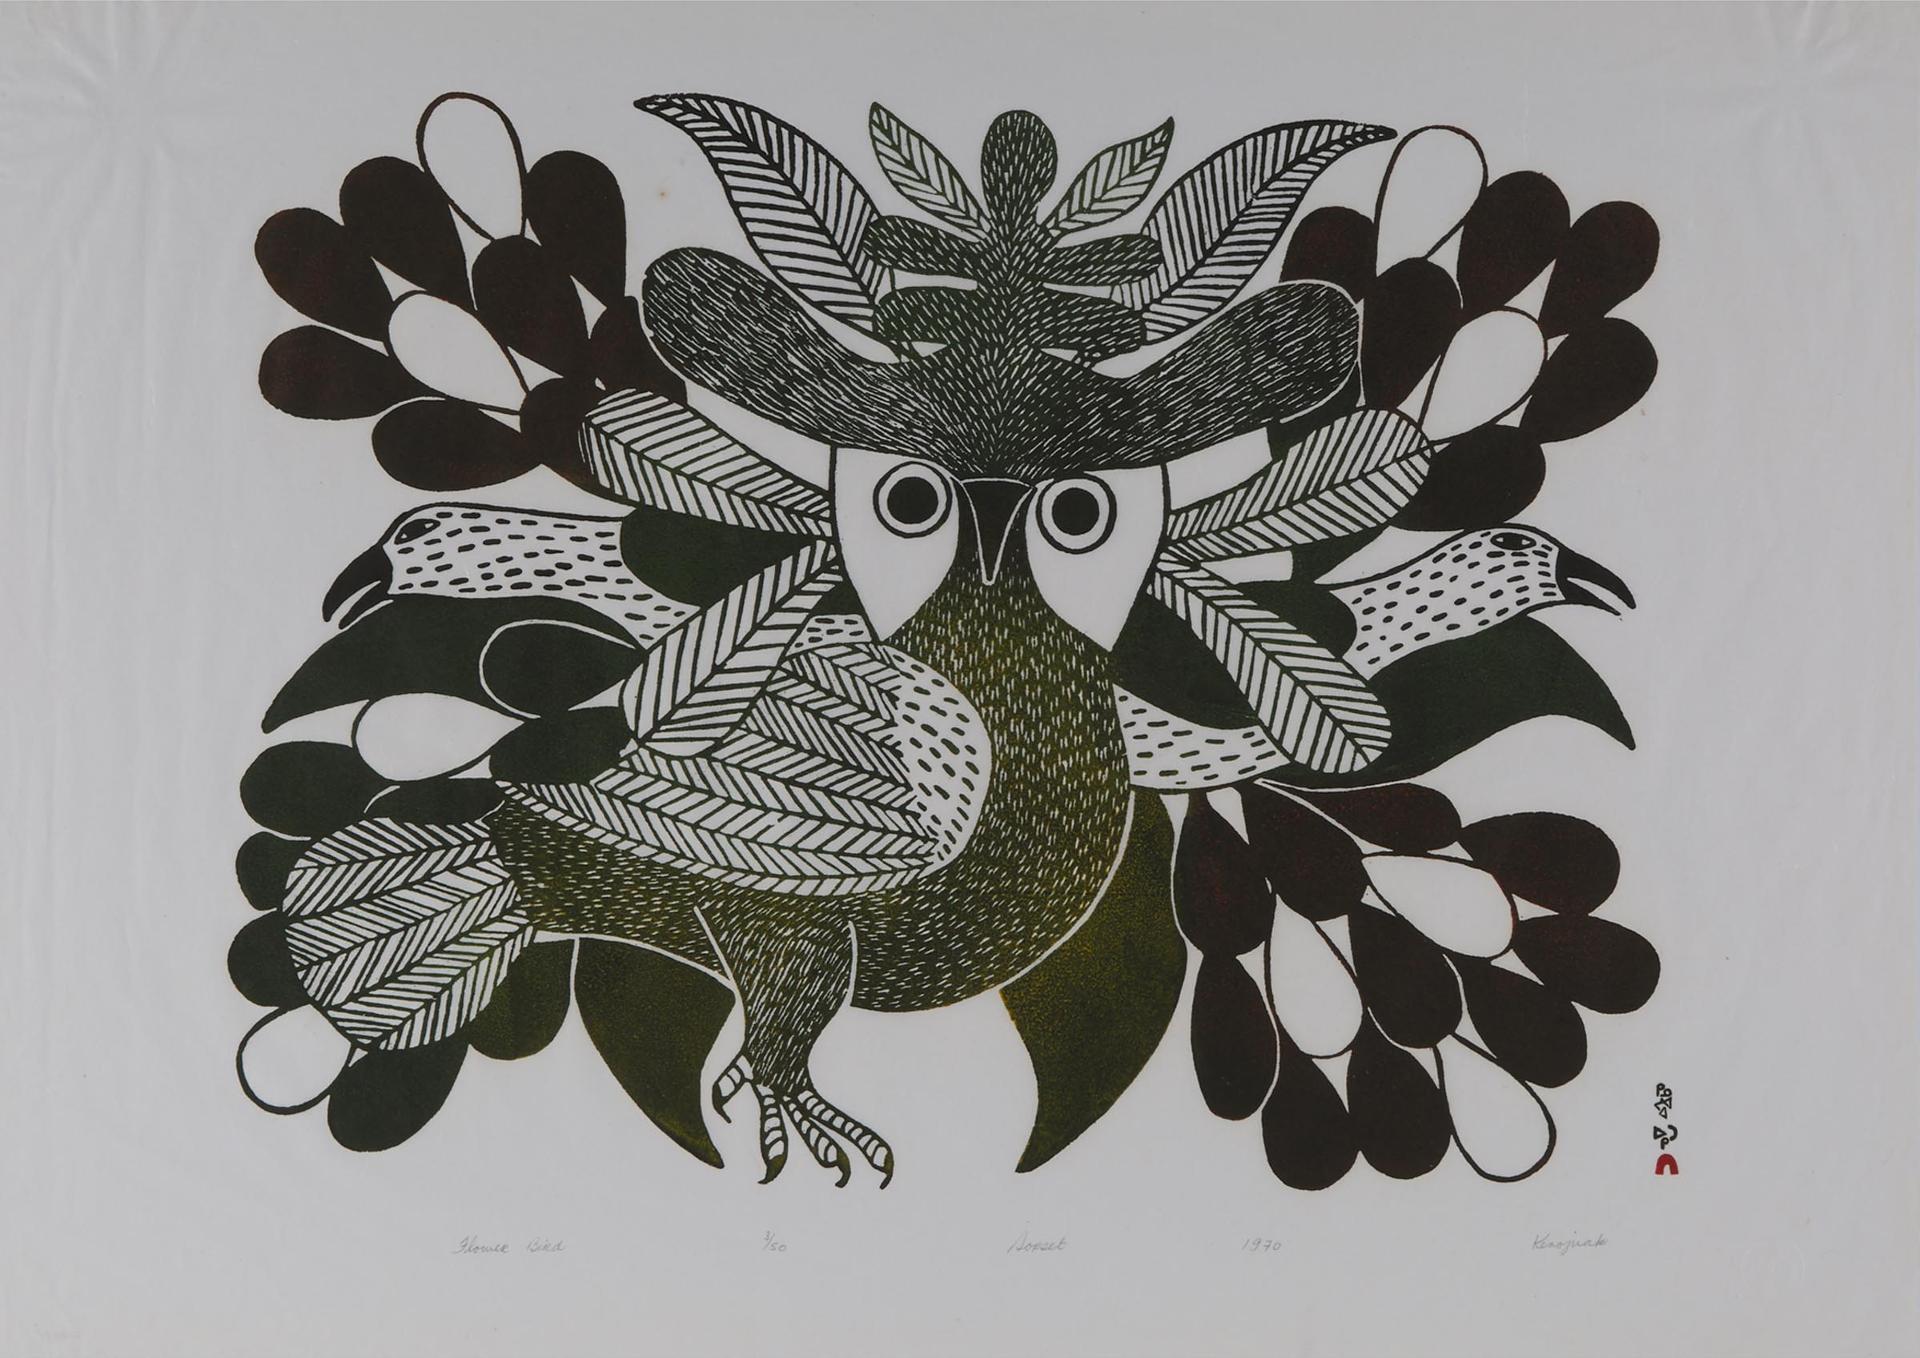 Kenojuak Ashevak (1927-2013) - Flower Bird